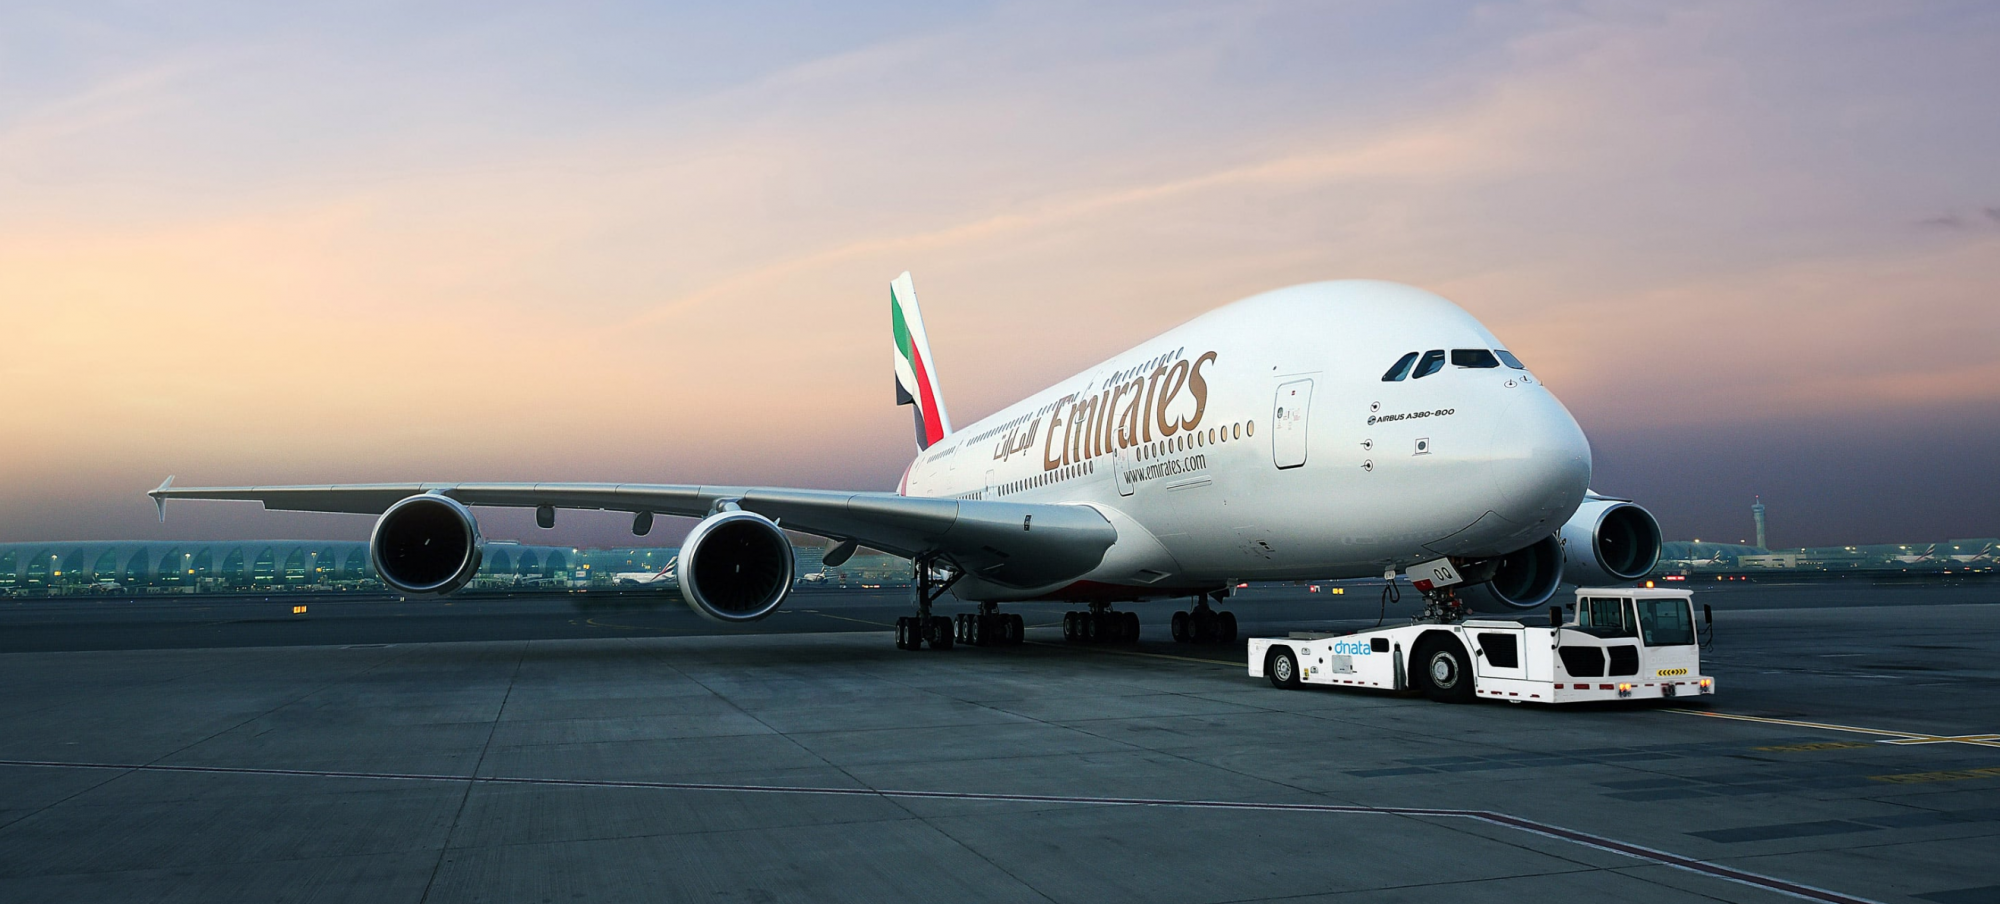 Letecká společnost Emirates za loňský rok vytvořila zisk ve výši 762  milionů dolarů - CzechCrunch